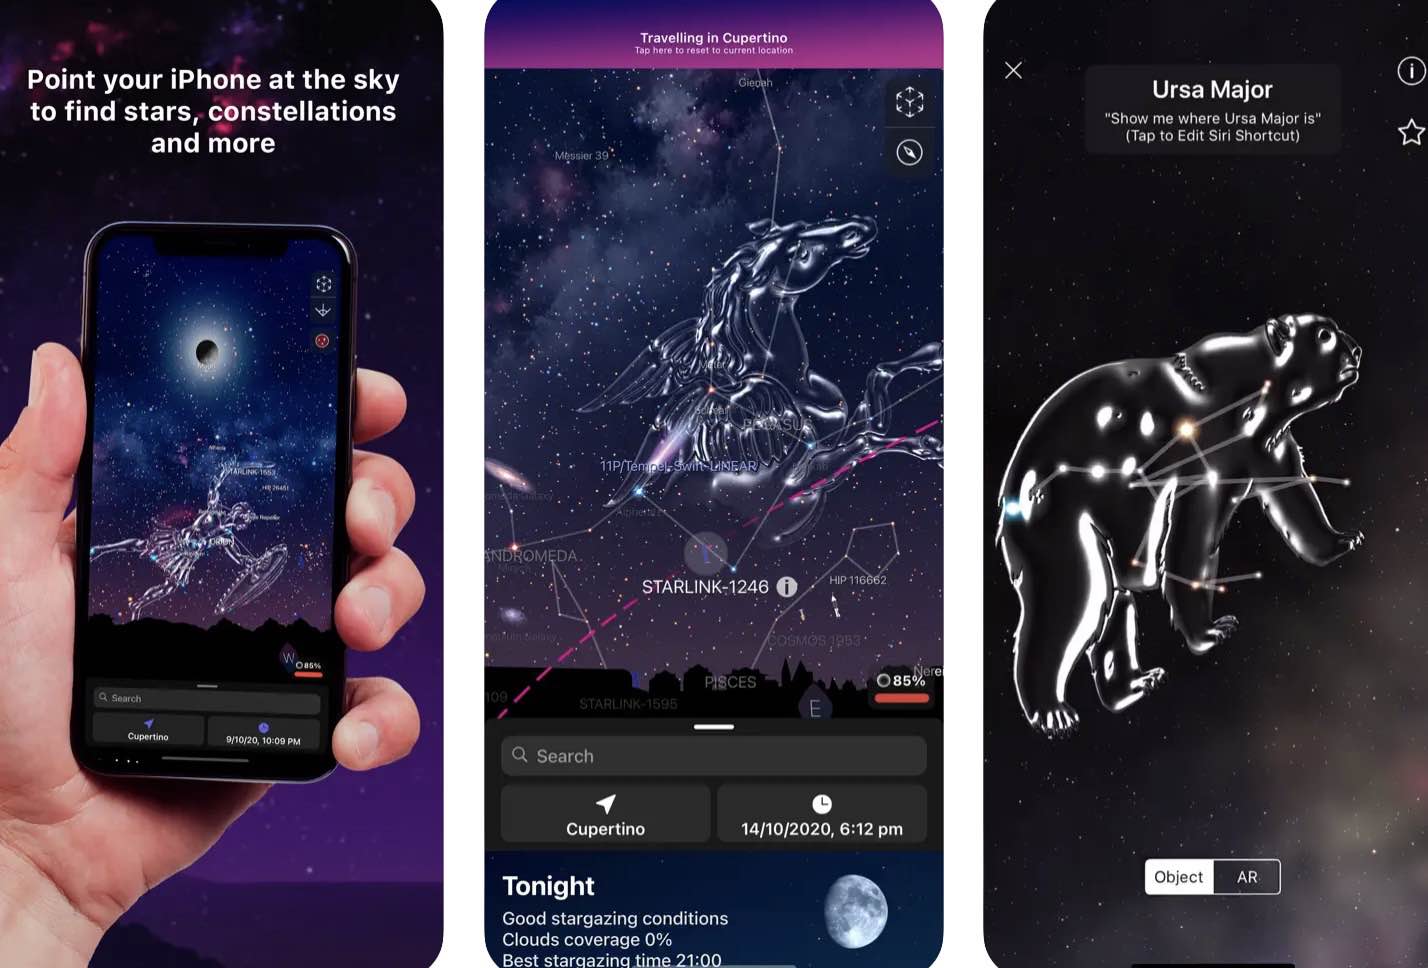 Najlepsze aplikacje do oglądania letniego nocnego nieba gry-i-aplikacje, ciekawostki Układ Słoneczny, Star Walk, Star Gazer, Star Chart, Solar Walk, SkyView Lite, SkySafari, rozszerzona rzeczywistość, Obserwacja nocnego nieba, Night Sky, Kosmos, Google Sky Map, Galaktyka, Astronomia, aplikacje mobilne, aplikacje do oglądania nieba, aplikacja na iPhone do oglądania nocnego nieba  Podczas letnich miesięcy, kiedy wieczory są ciepłe, a niebo jasne, wielu z nas spogląda w górę, by podziwiać rozgwieżdżone niebo. Te aplikacje Wam w tym pomogą. nightsky